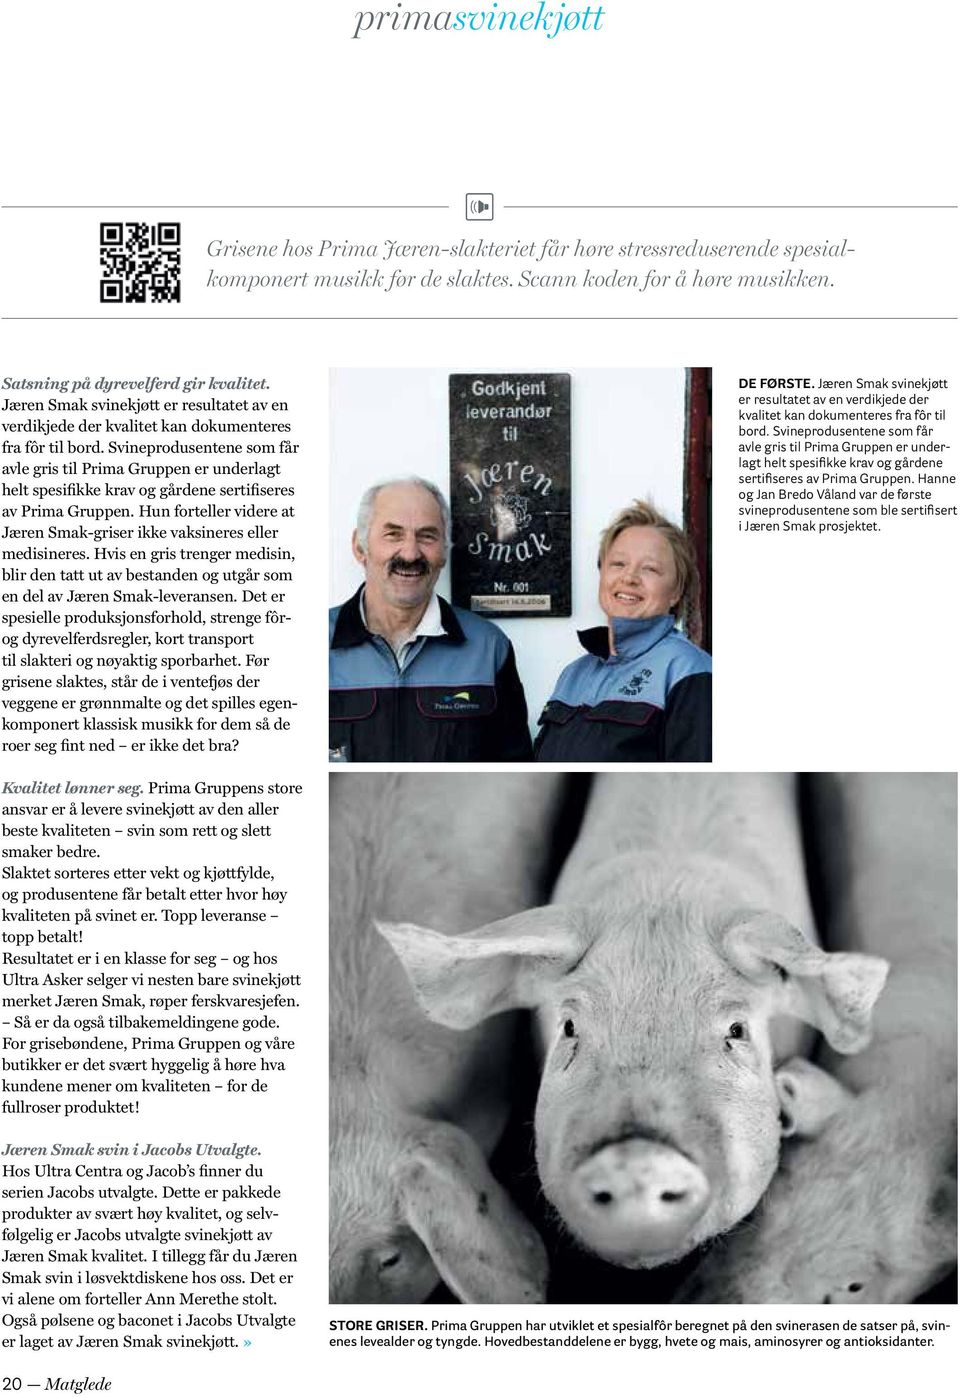 Svineprodusentene som får avle gris til Prima Gruppen er underlagt helt spesifikke krav og gårdene sertifiseres av Prima Gruppen.